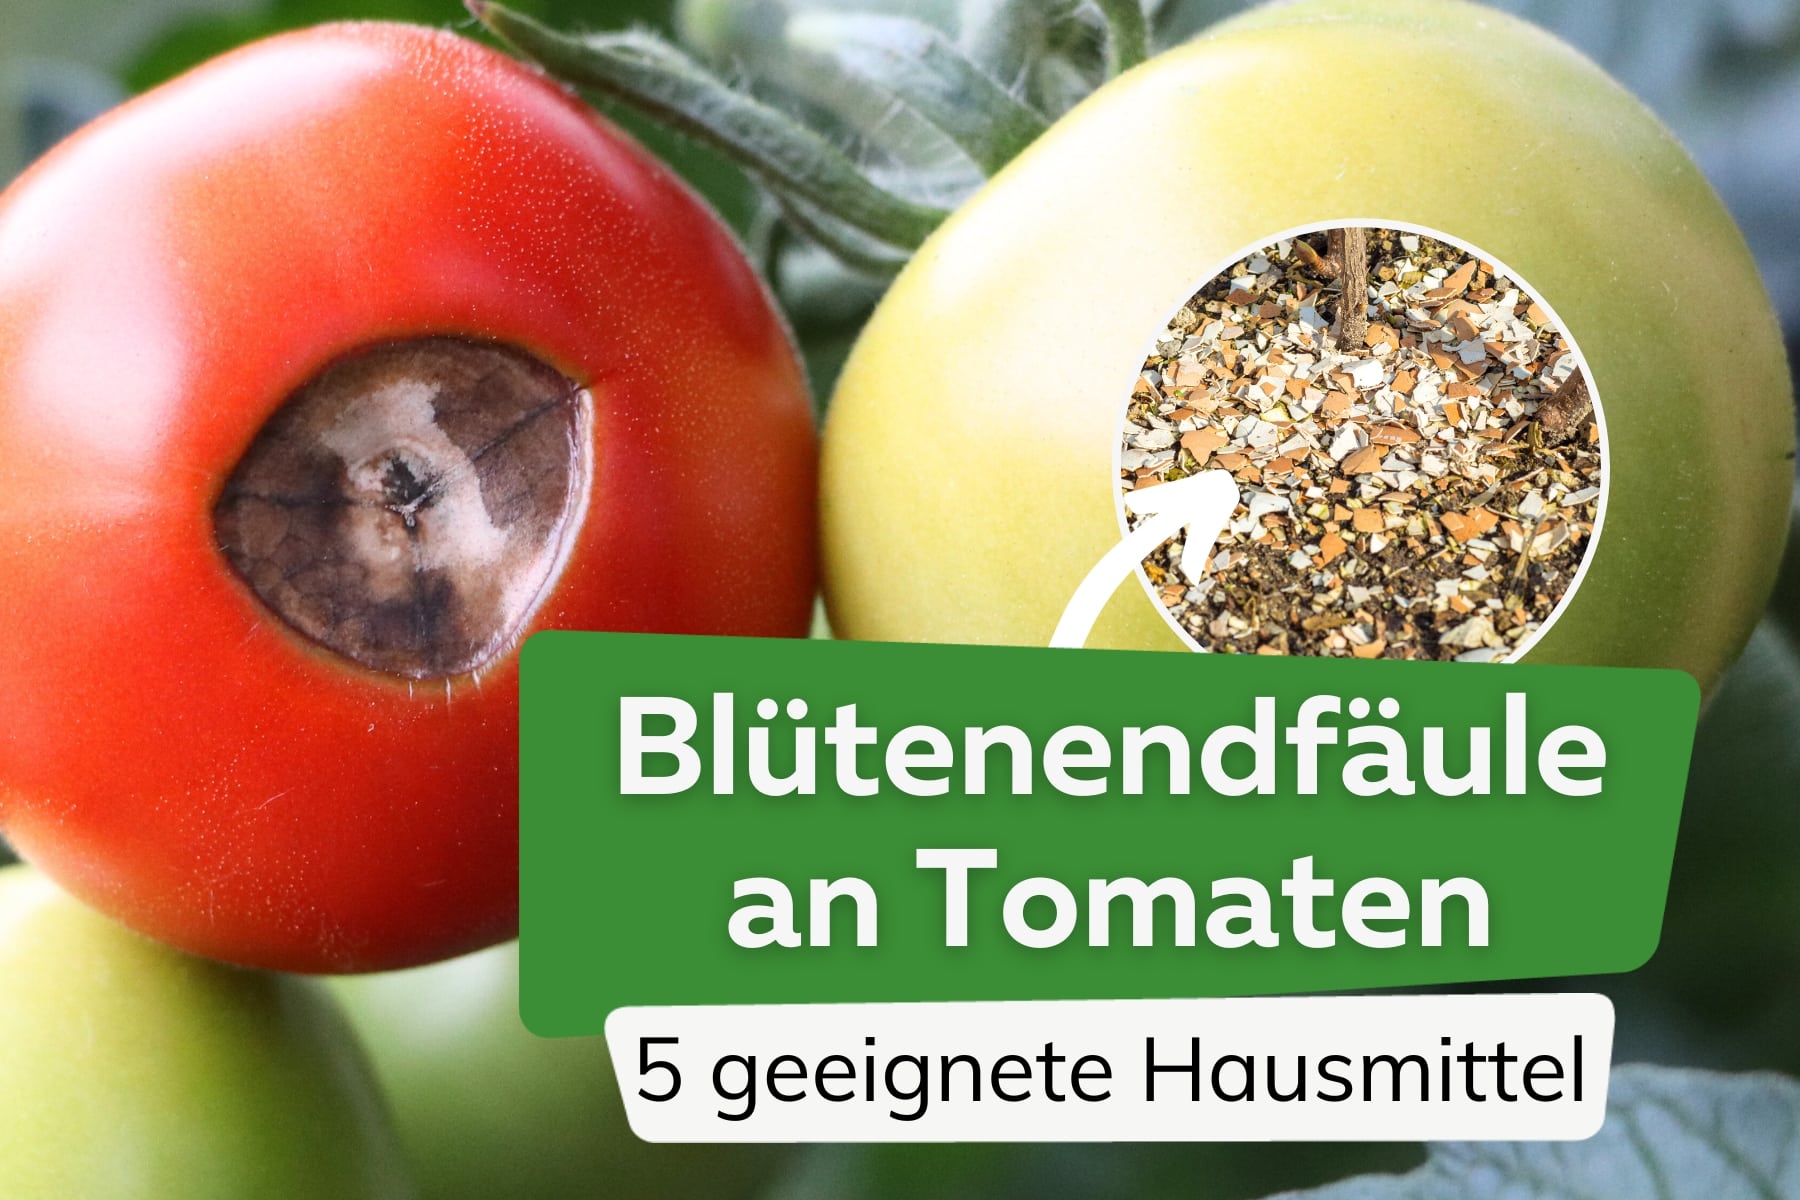 Podredumbre apical del tomate: 5 remedios caseros